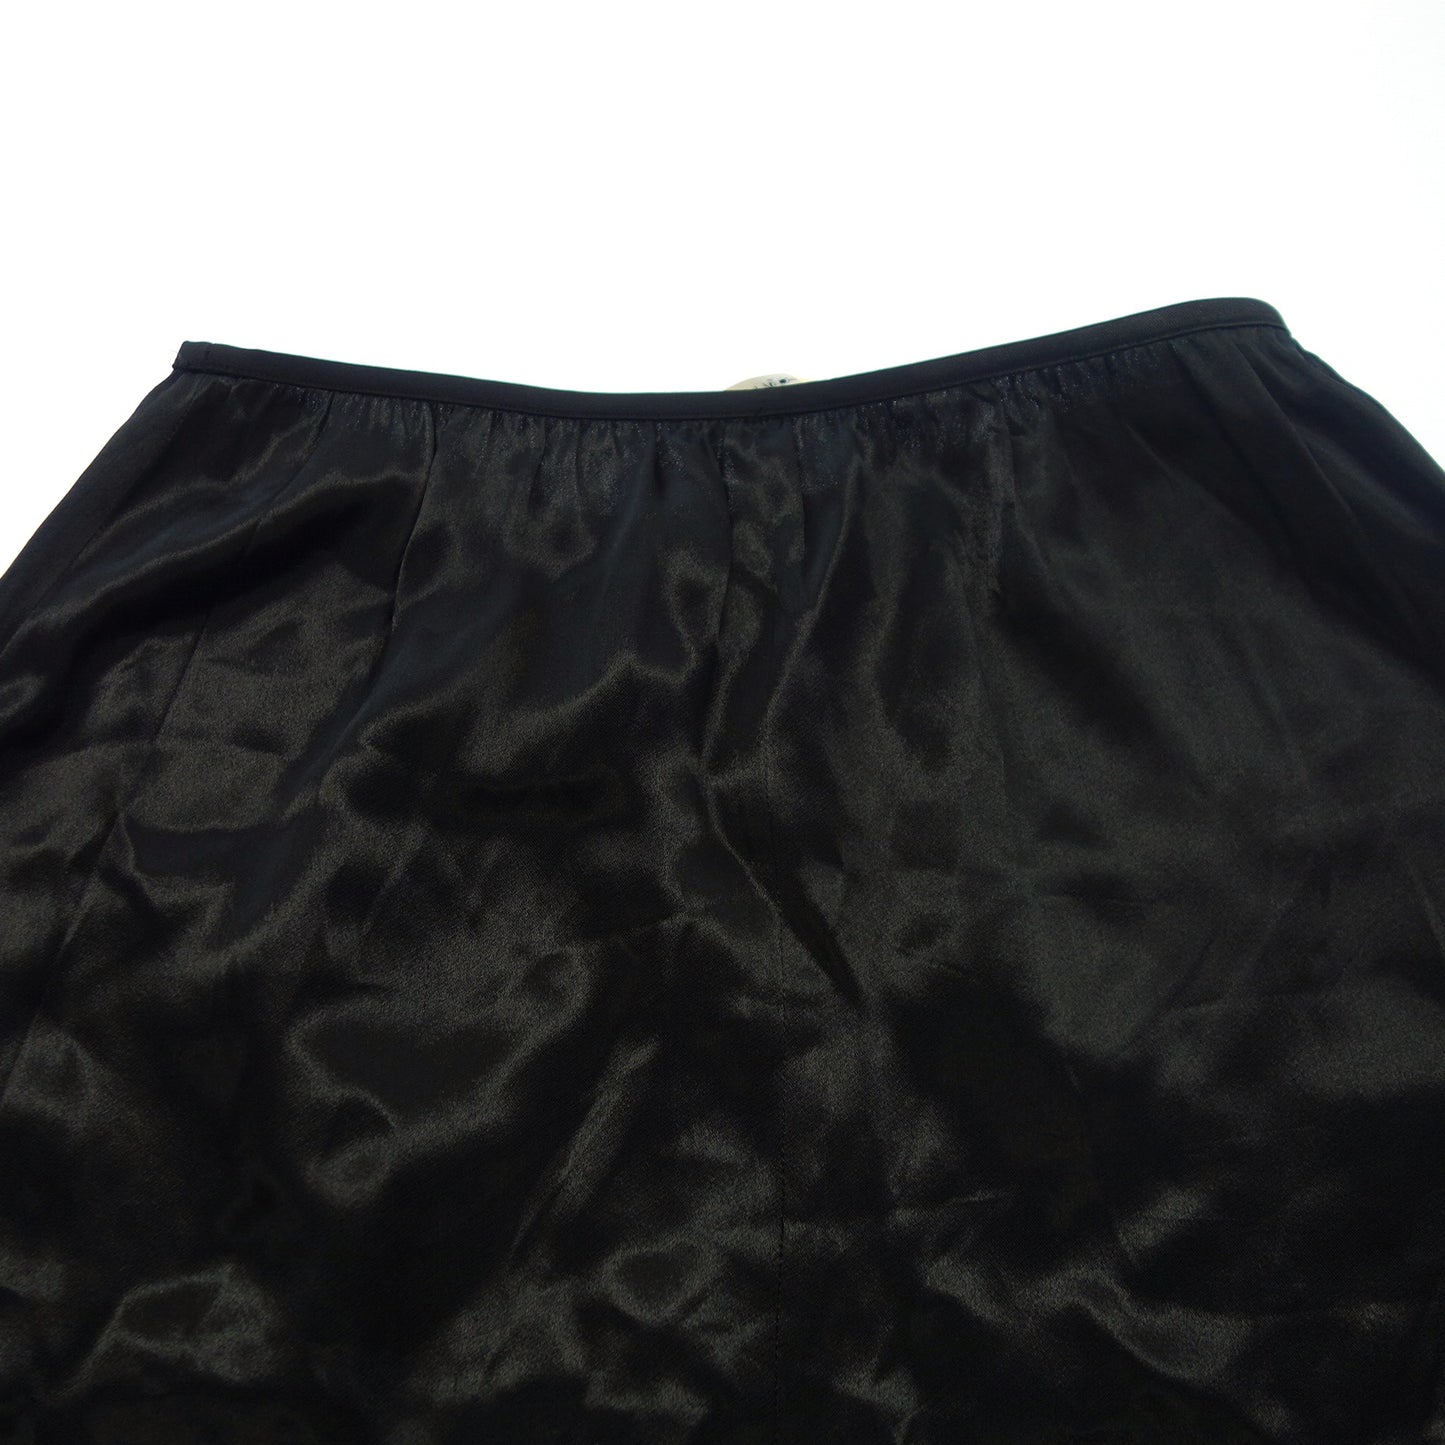 Used ◆ Celine Phoebe Skirt Women's 34 Black CELINE [AFB5] 